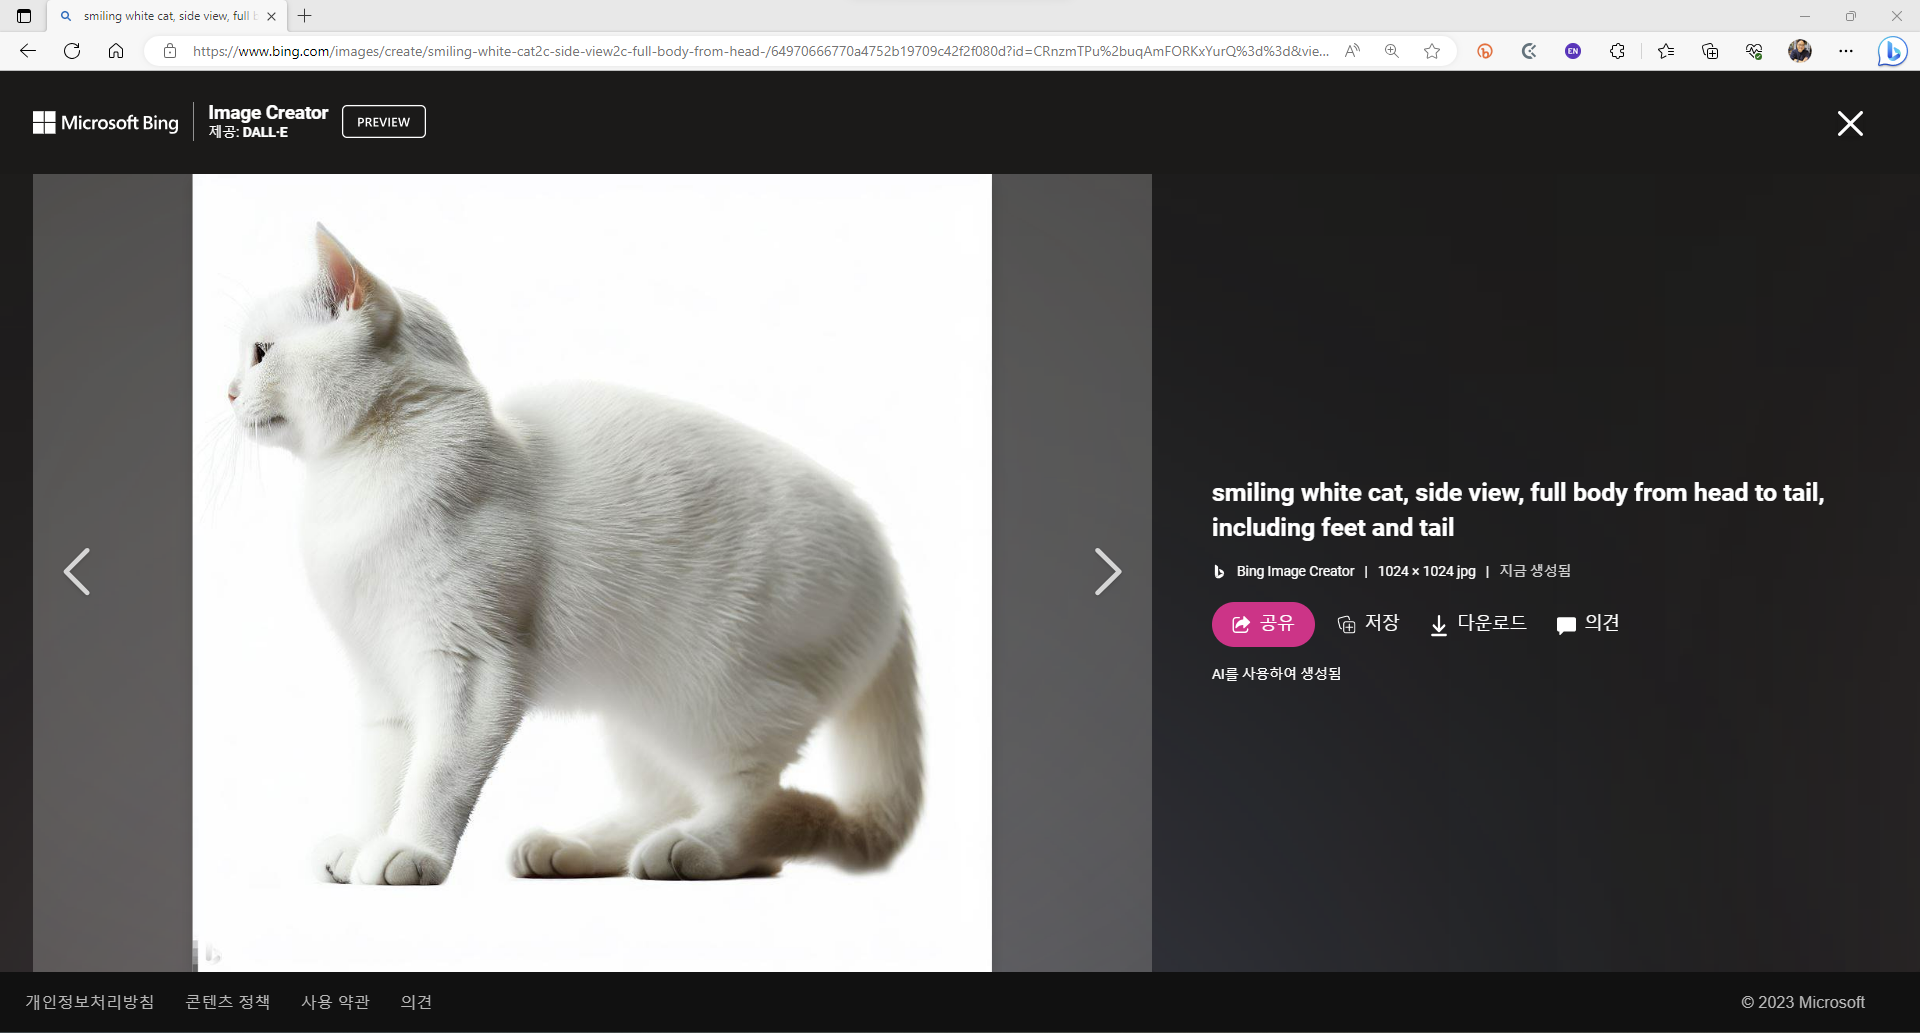 "smiling white cat, side view, full body"